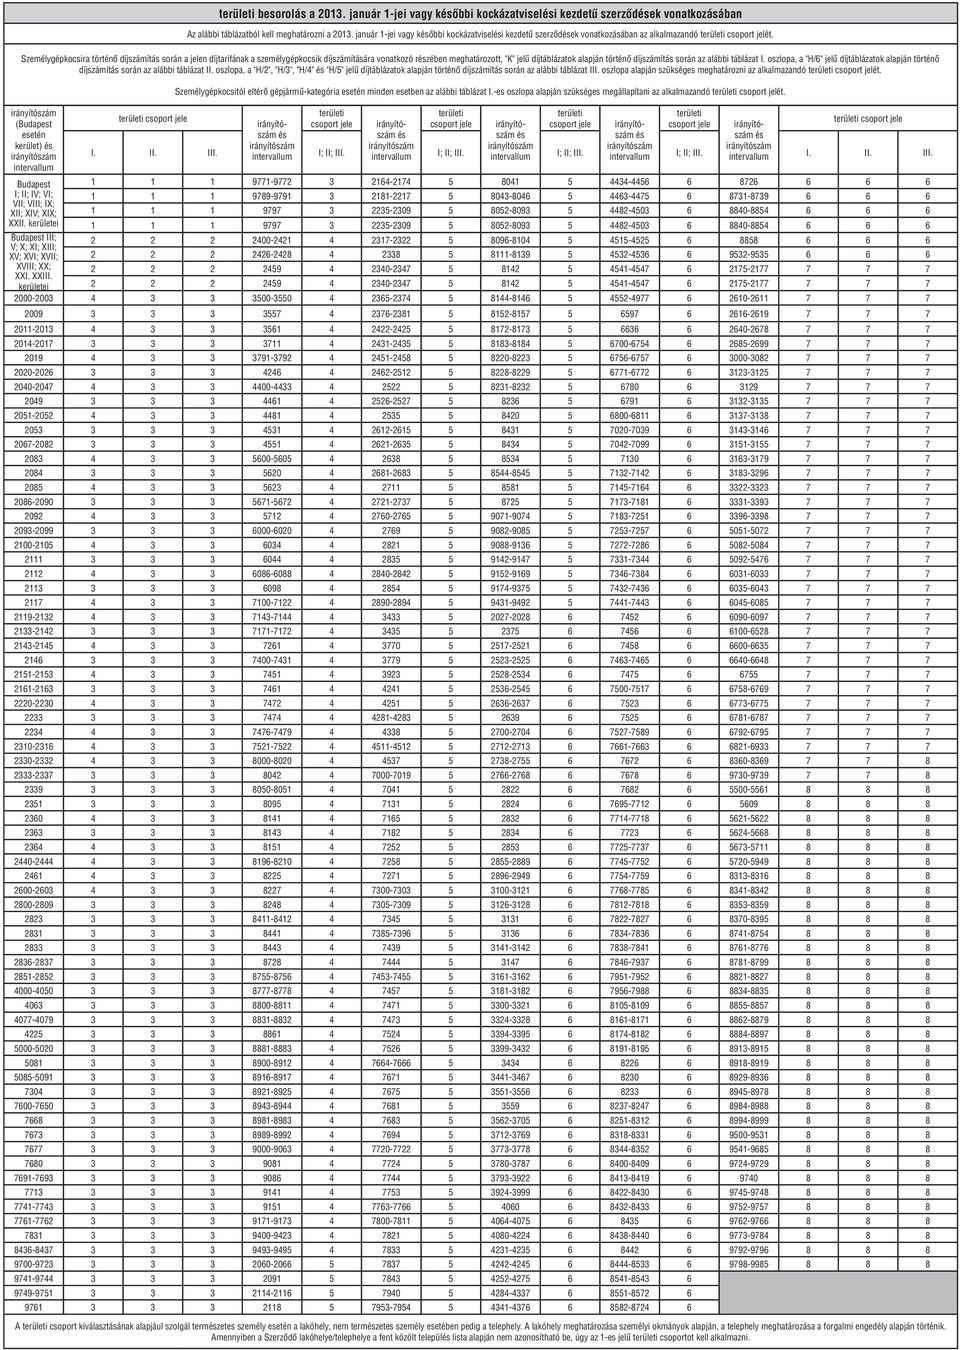 táblázat I. oszlopa, a "H/6" jelű díjtáblázatok alapján történő díjszámítás során az alábbi táblázat II.